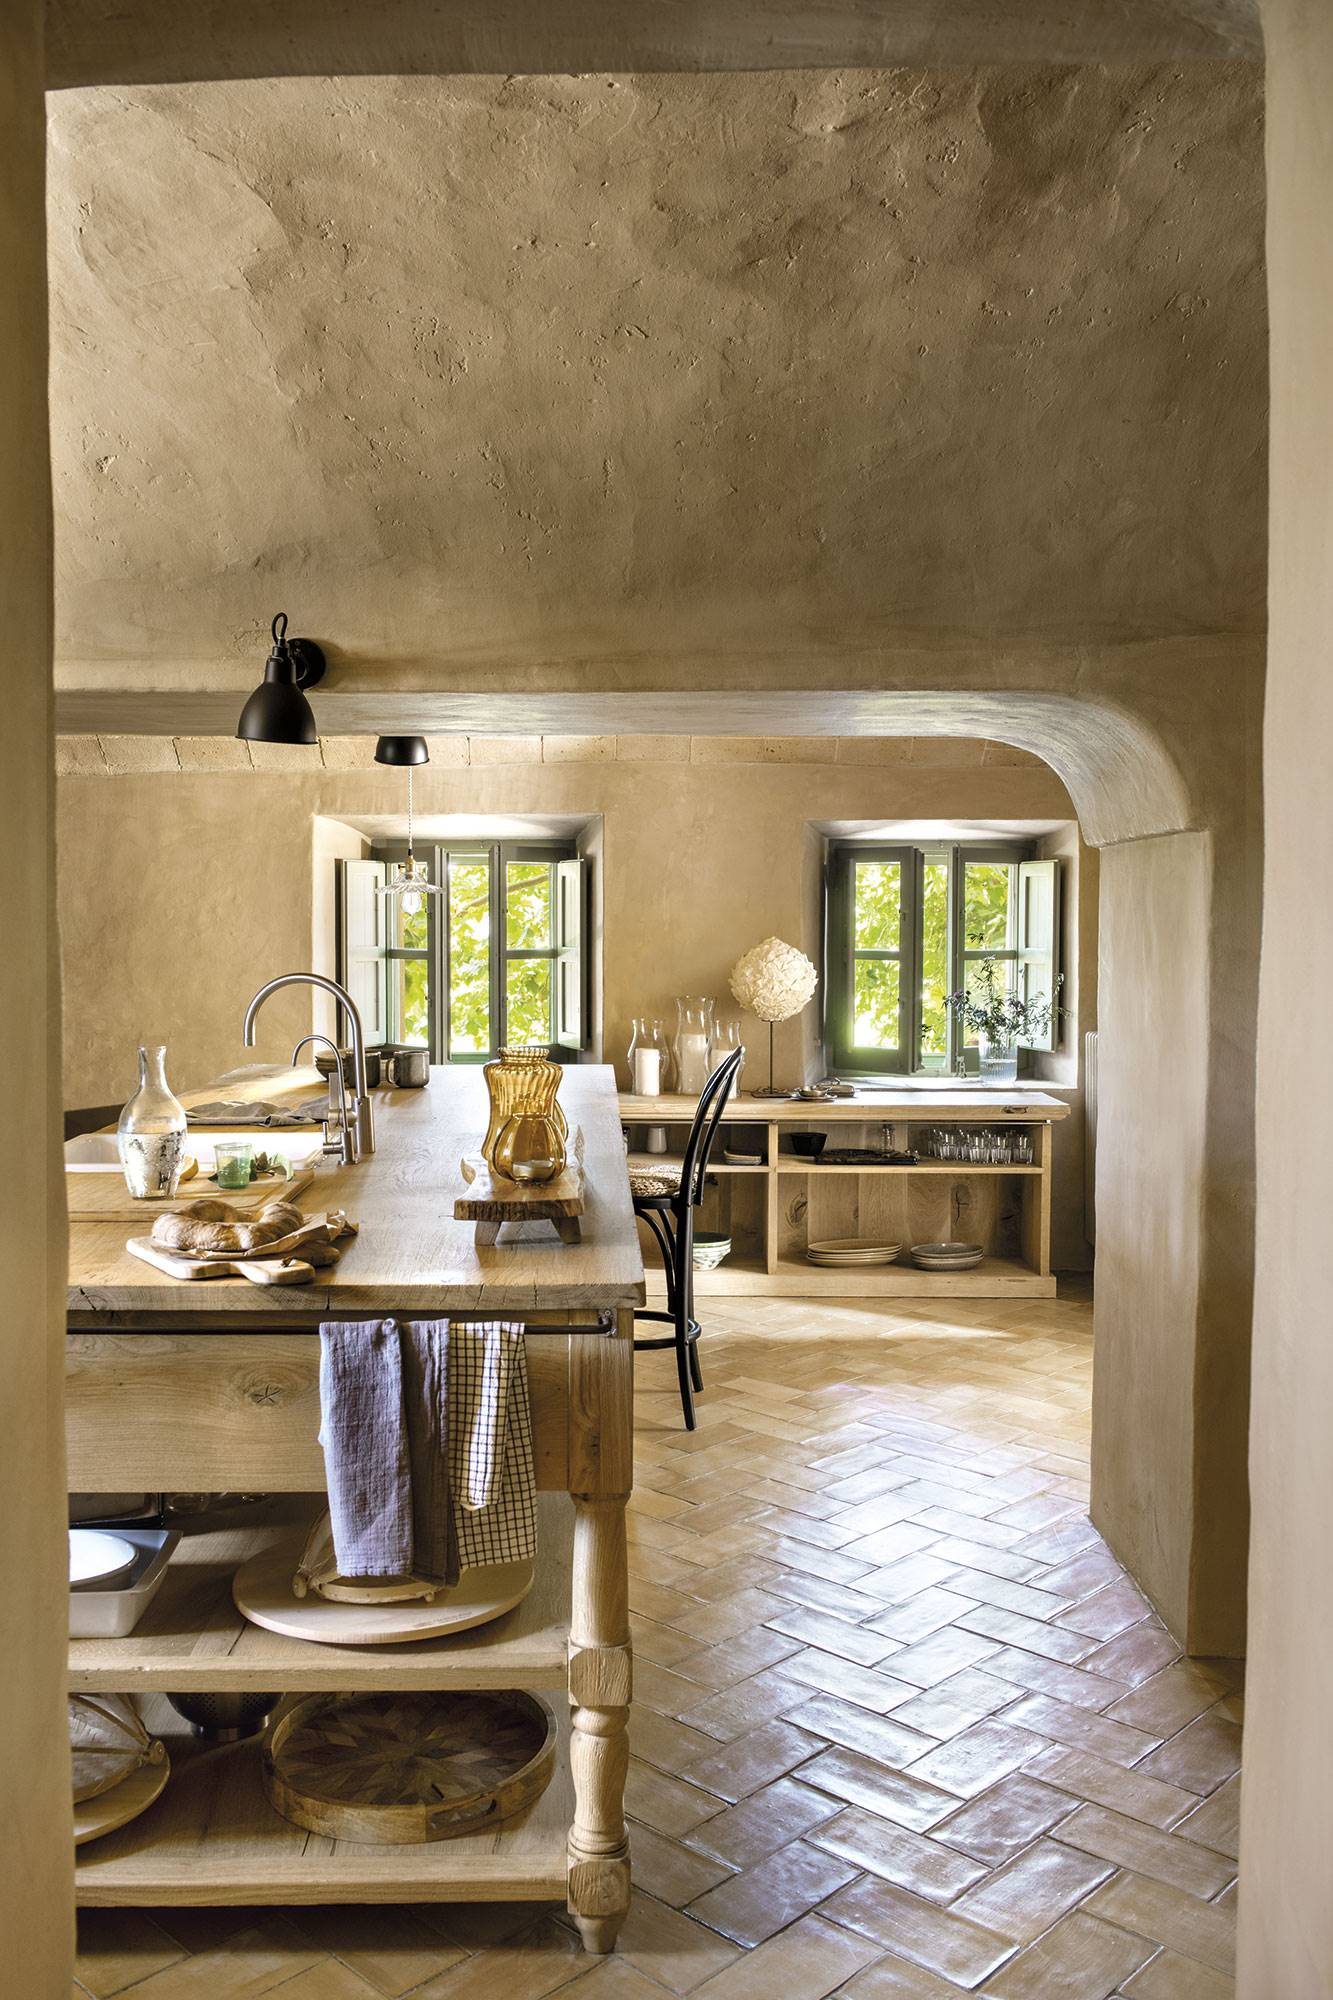 Cocina con suelo de barro, muebles de madera y ventanas verdes